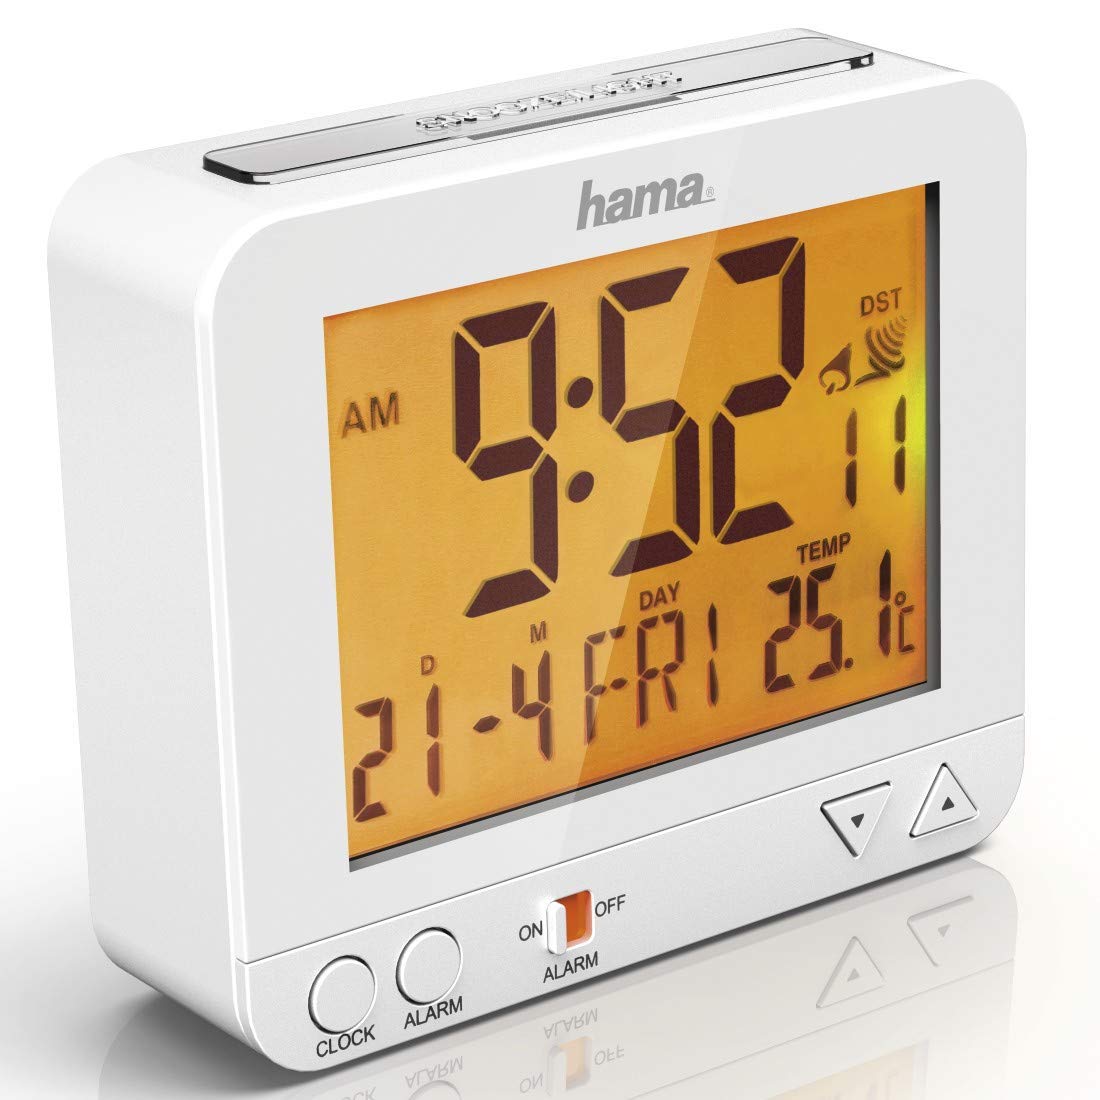 Hama Funk-Wecker Digital RC550 (Funkuhr mit Nachlicht, Digitalwecker mit Temperatur- und Datumsanzeige, Speed-Alarm, inkl. Batterie) weiß, 12.50 x 09.00 x 04.80 cm